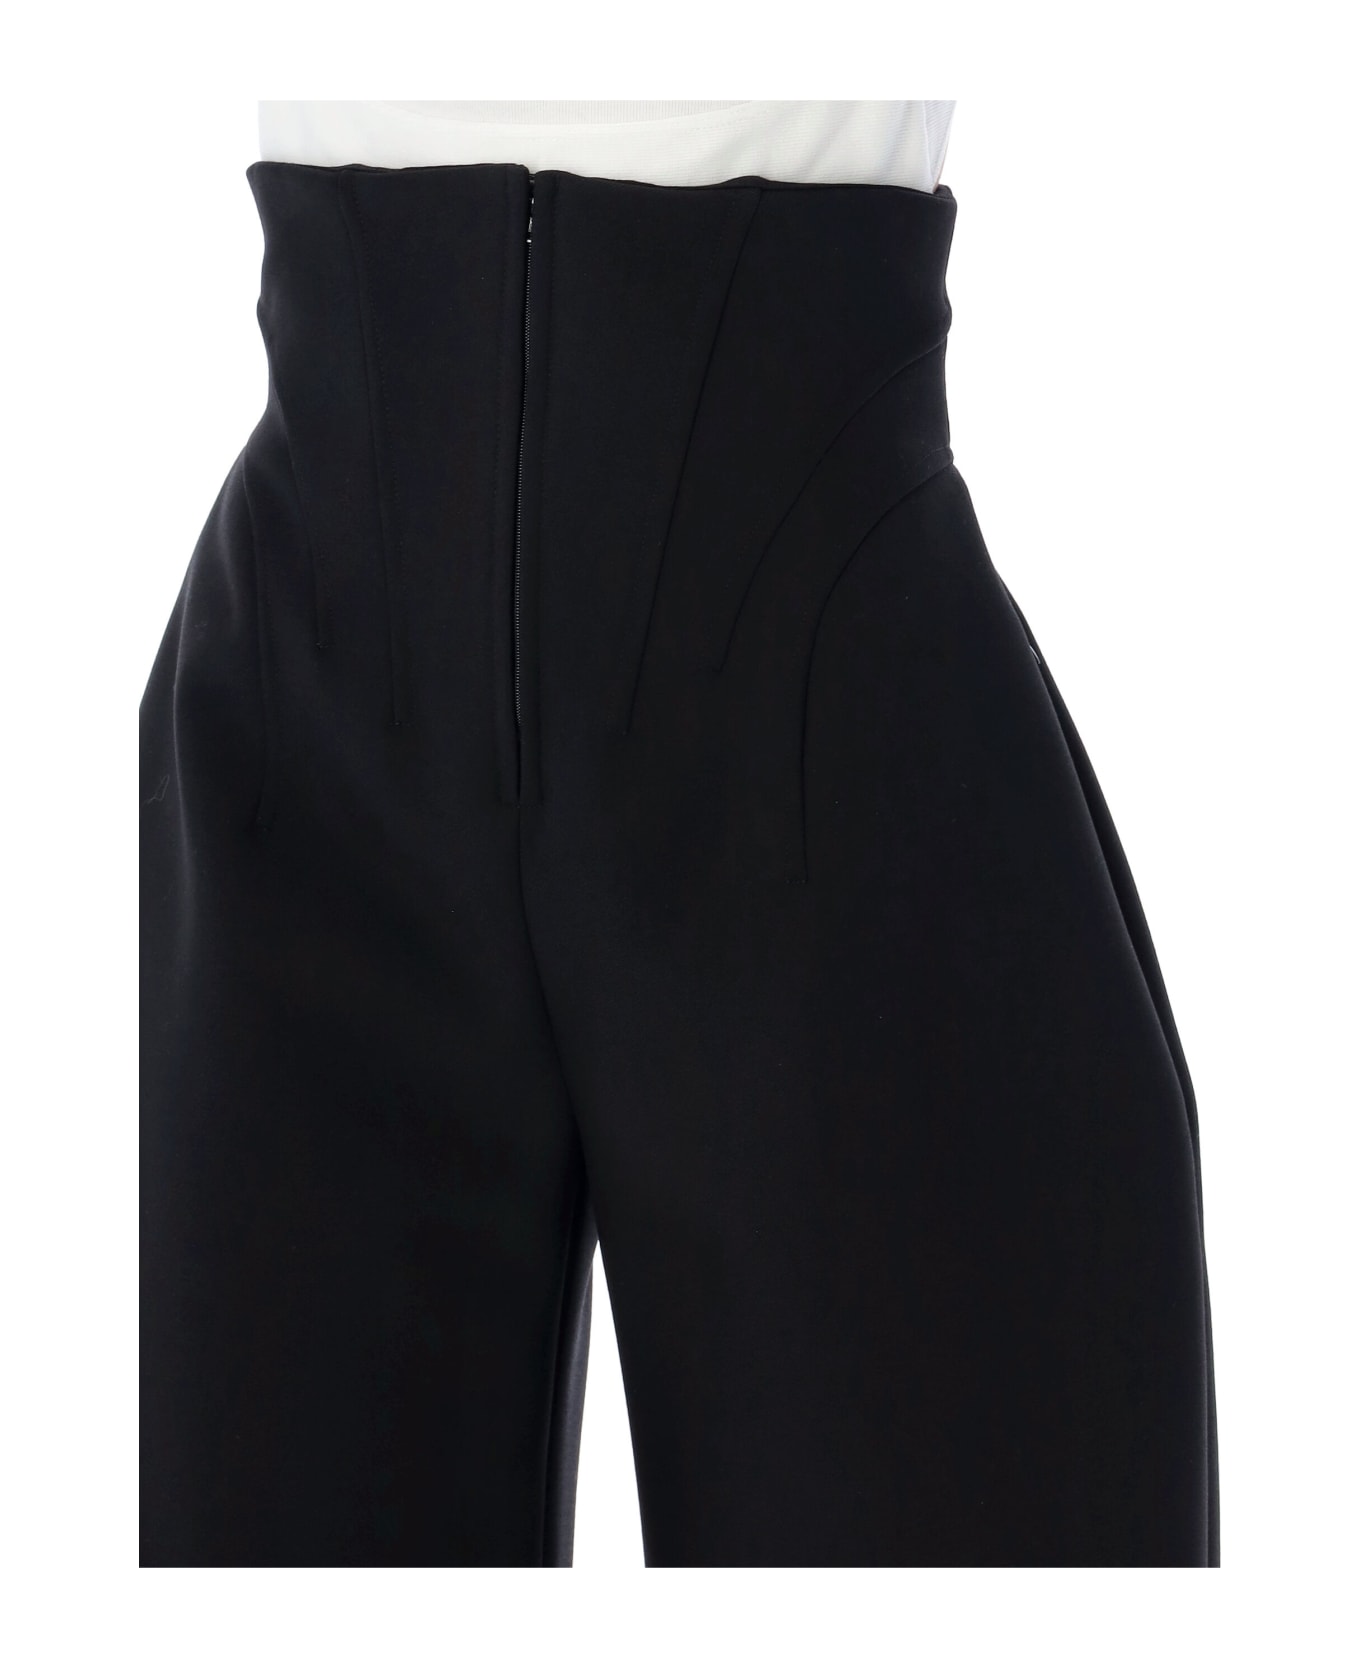 Alaia Round Corset Trousers - BLACK ALAIA